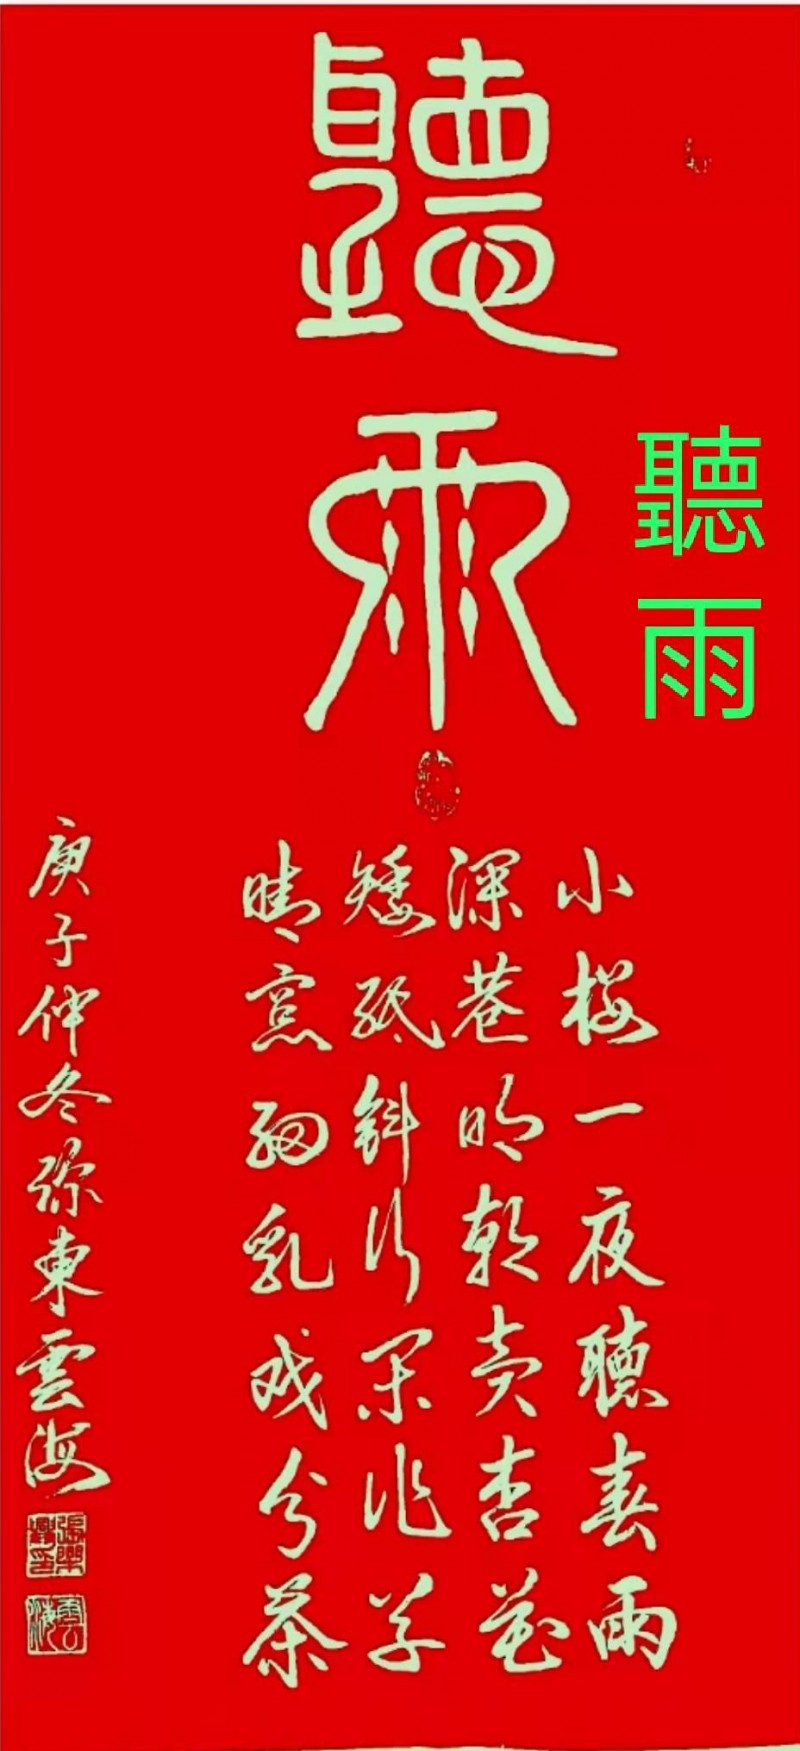 中国楹联学会中宣盛世文化艺术交流中心书画风采展示——张乐兴